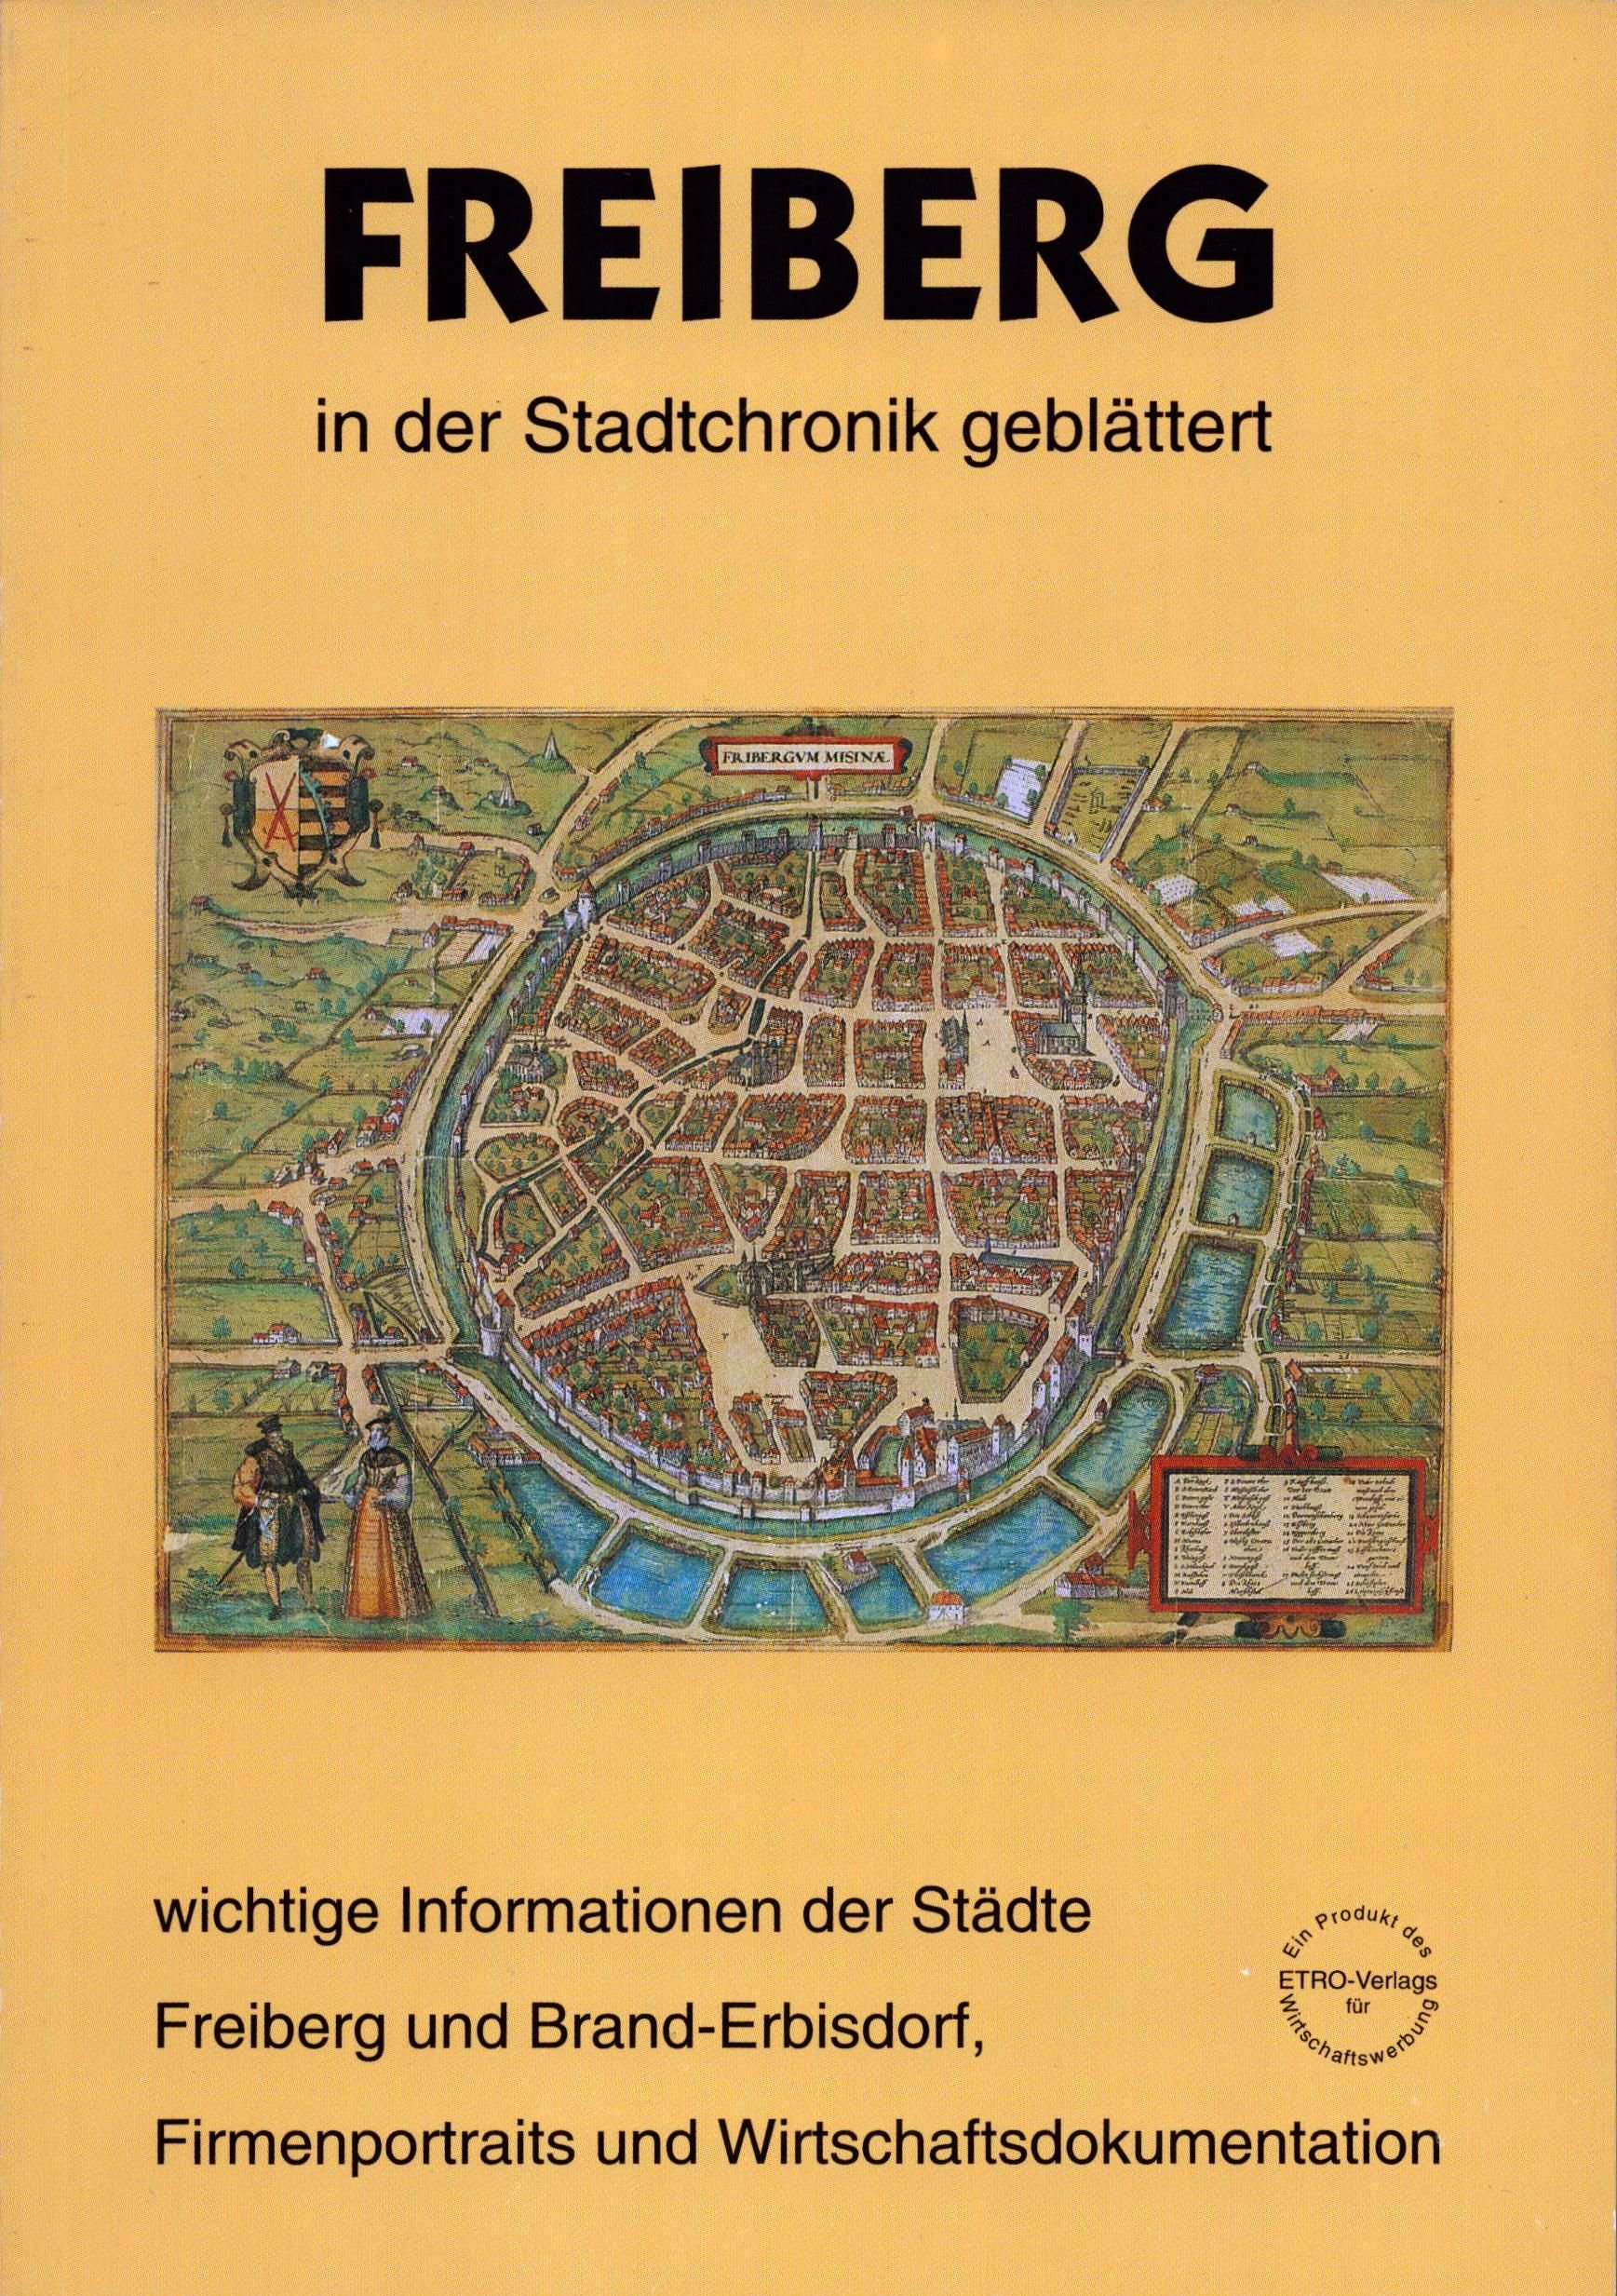 Freiberg in der Stadtchronik geblättert (Archiv SAXONIA-FREIBERG-STIFTUNG CC BY-NC-SA)